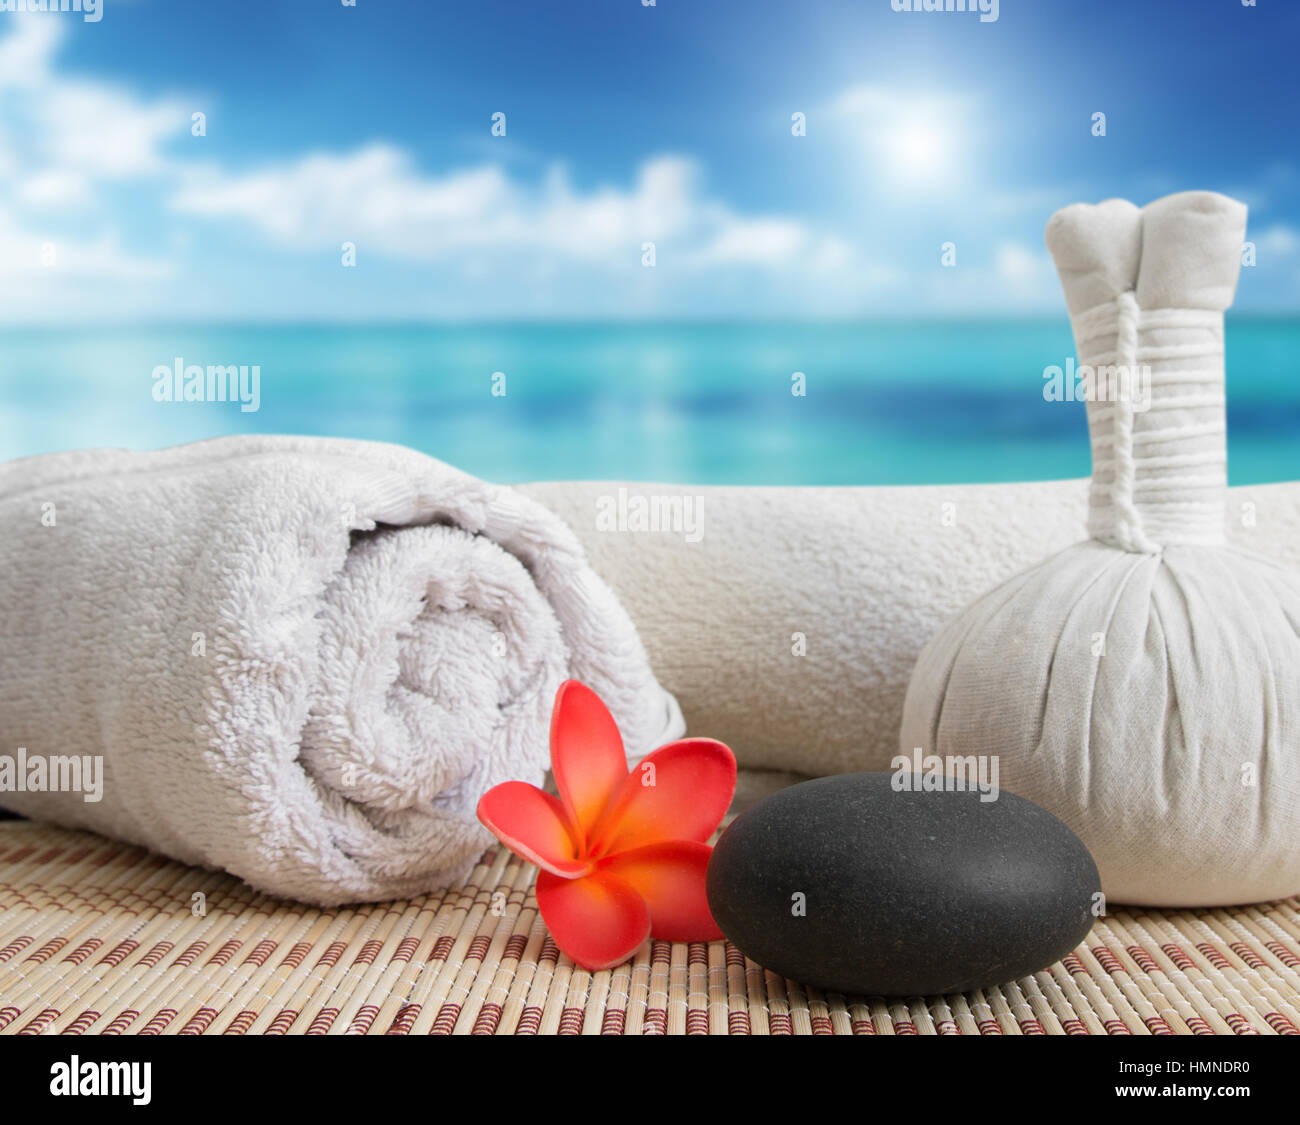 massage still life on beach Stock Photo